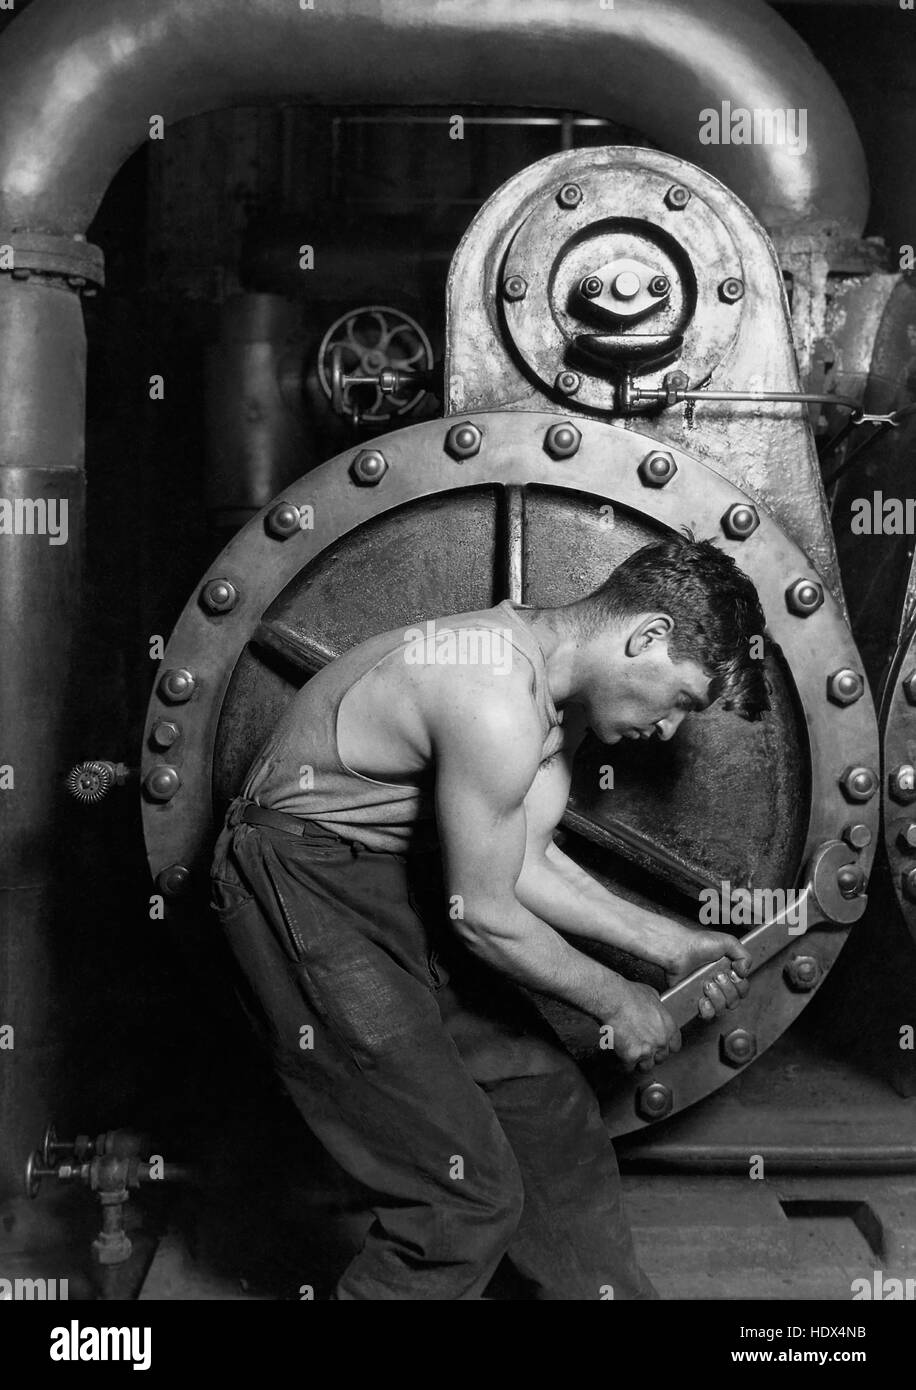 Lewis Hine's 1920 casa potenza meccanico che lavora sulla pompa a vapore, uno dei suoi "ritratti di lavoro', mostra una classe operaia americana in un ambiente industriale. La attentamente poste soggetto, un giovane uomo con la chiave in mano, si curvò su, circondato dai macchinari che definisce il suo lavoro. Ma mentre vincolato dalla macchina (quasi un grembo di metallo), l'uomo è proteso contro di essa--i muscoli tesi, con un sguardo determinato--in una rappresentazione iconica della mascolinità. Fotografia di Lewis Hine W.. Foto Stock